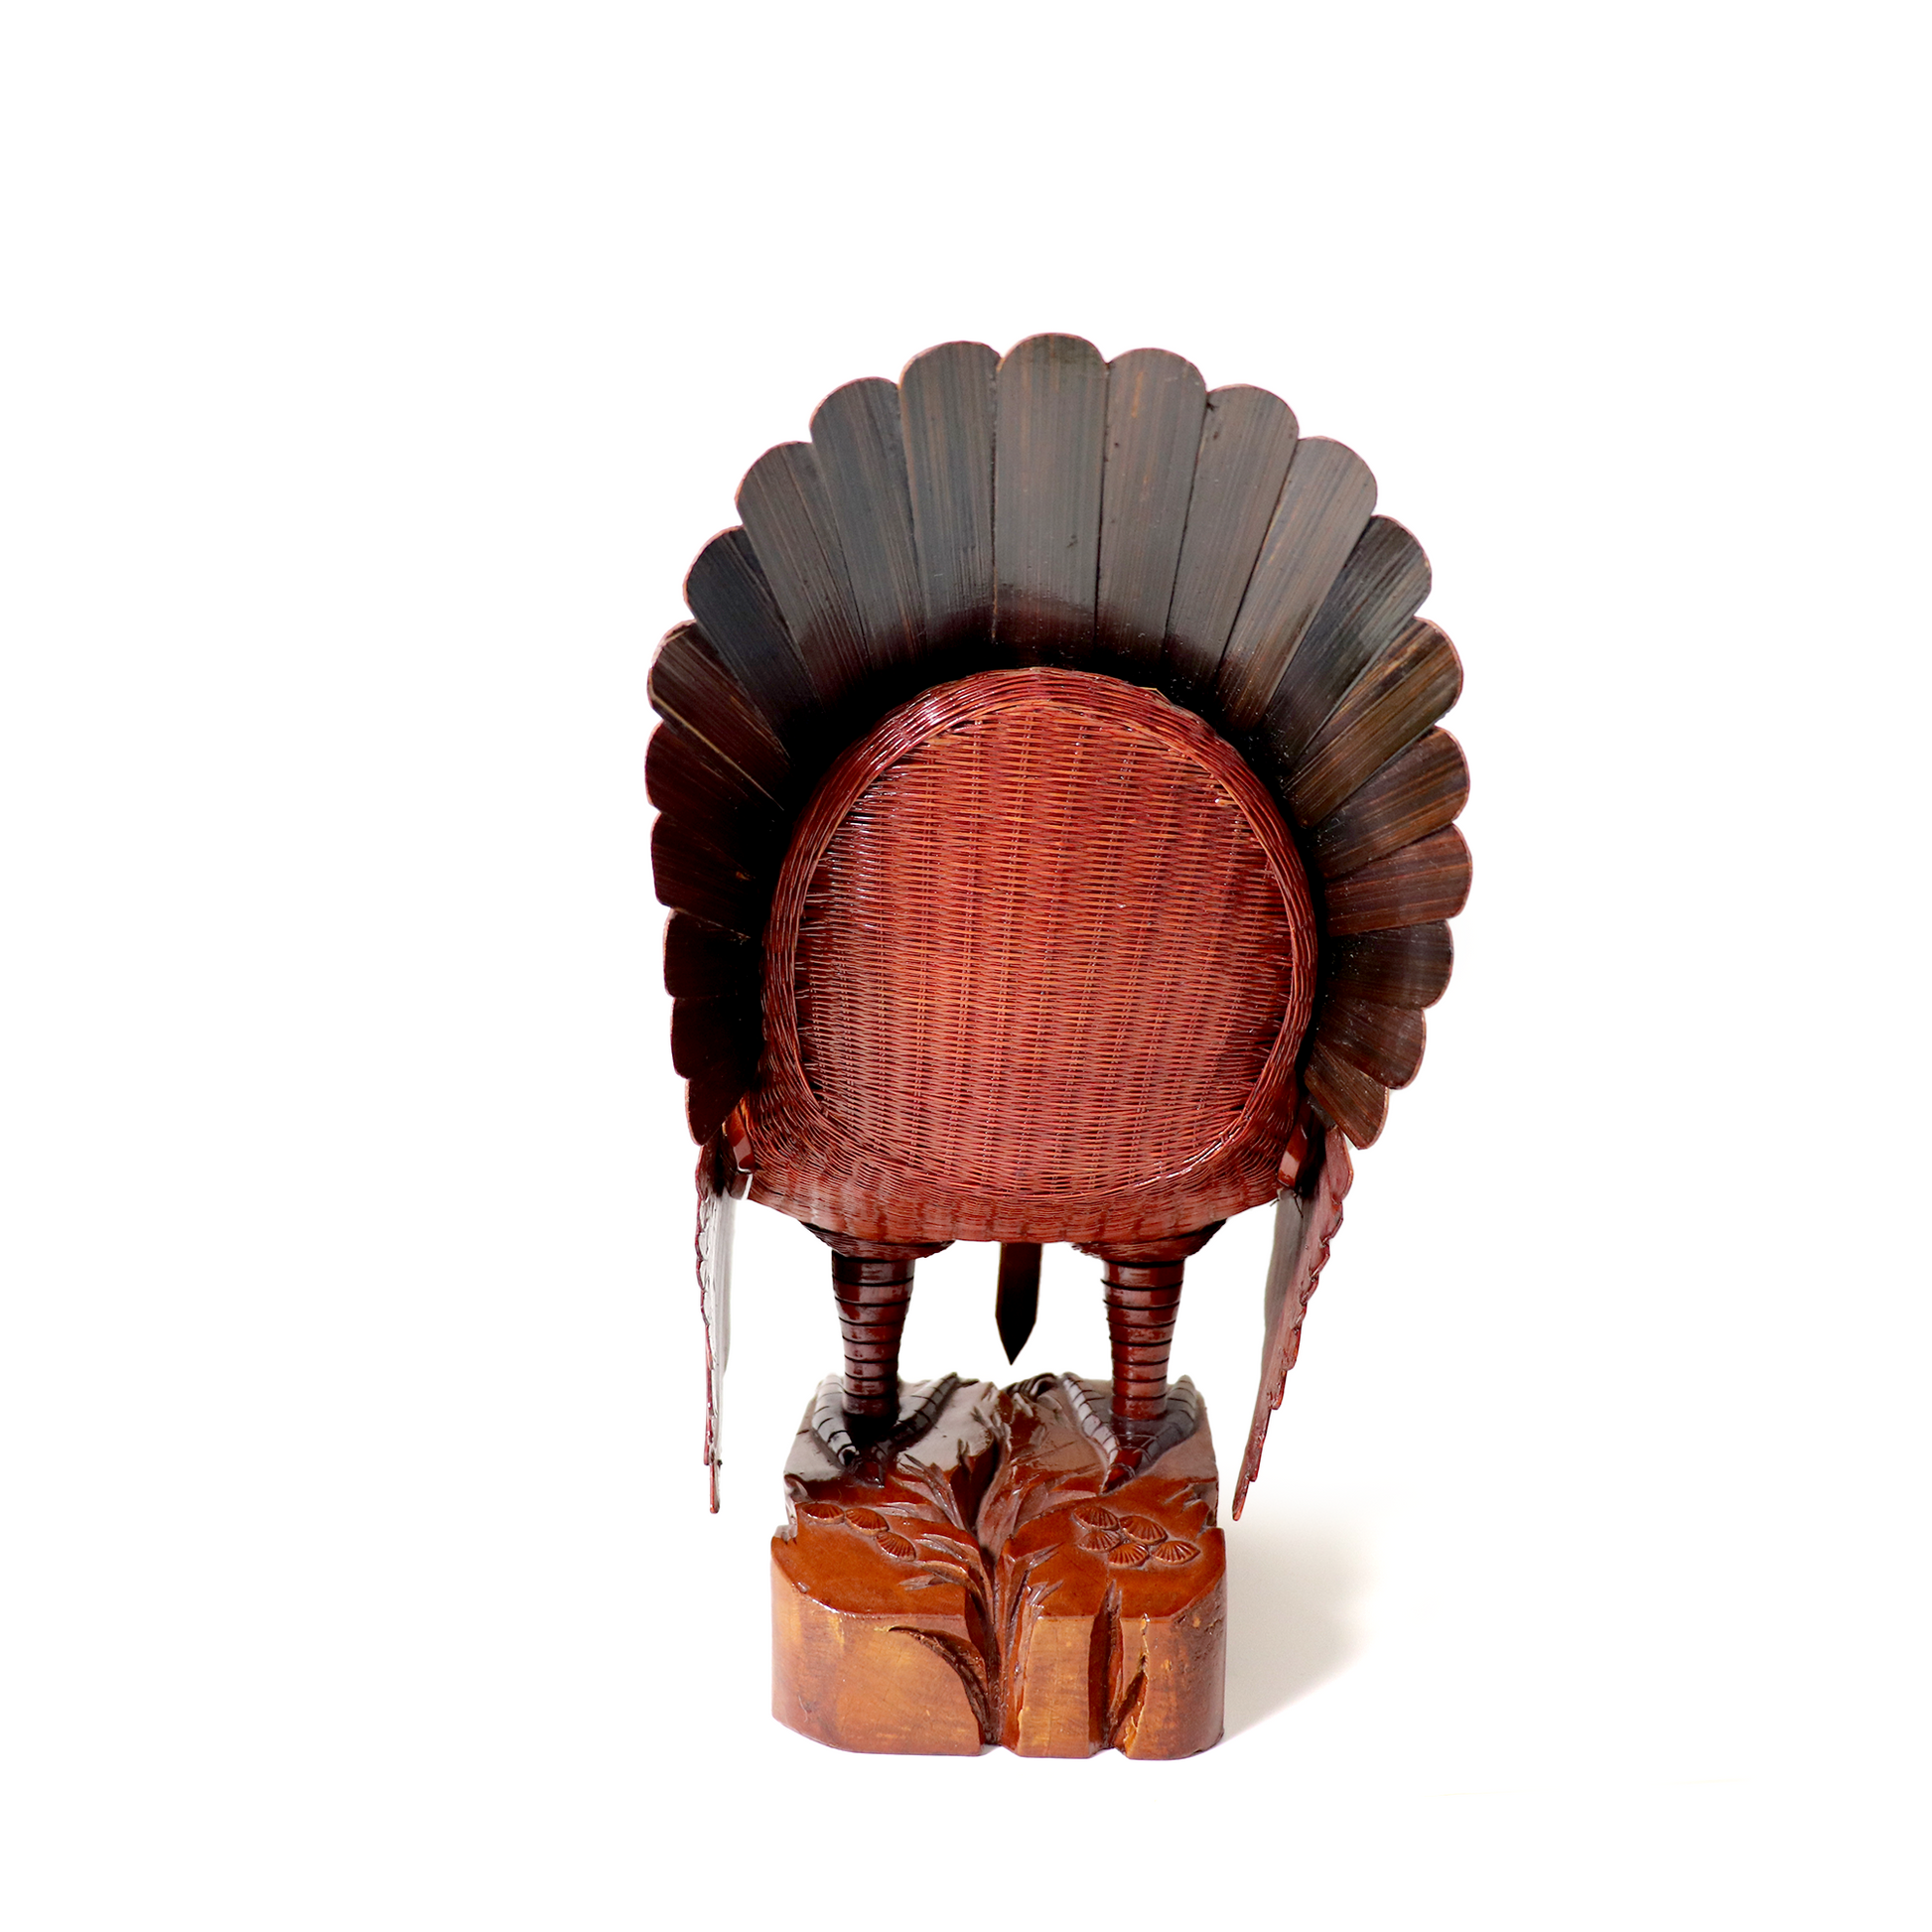 Chinese wicker turkey sculpture